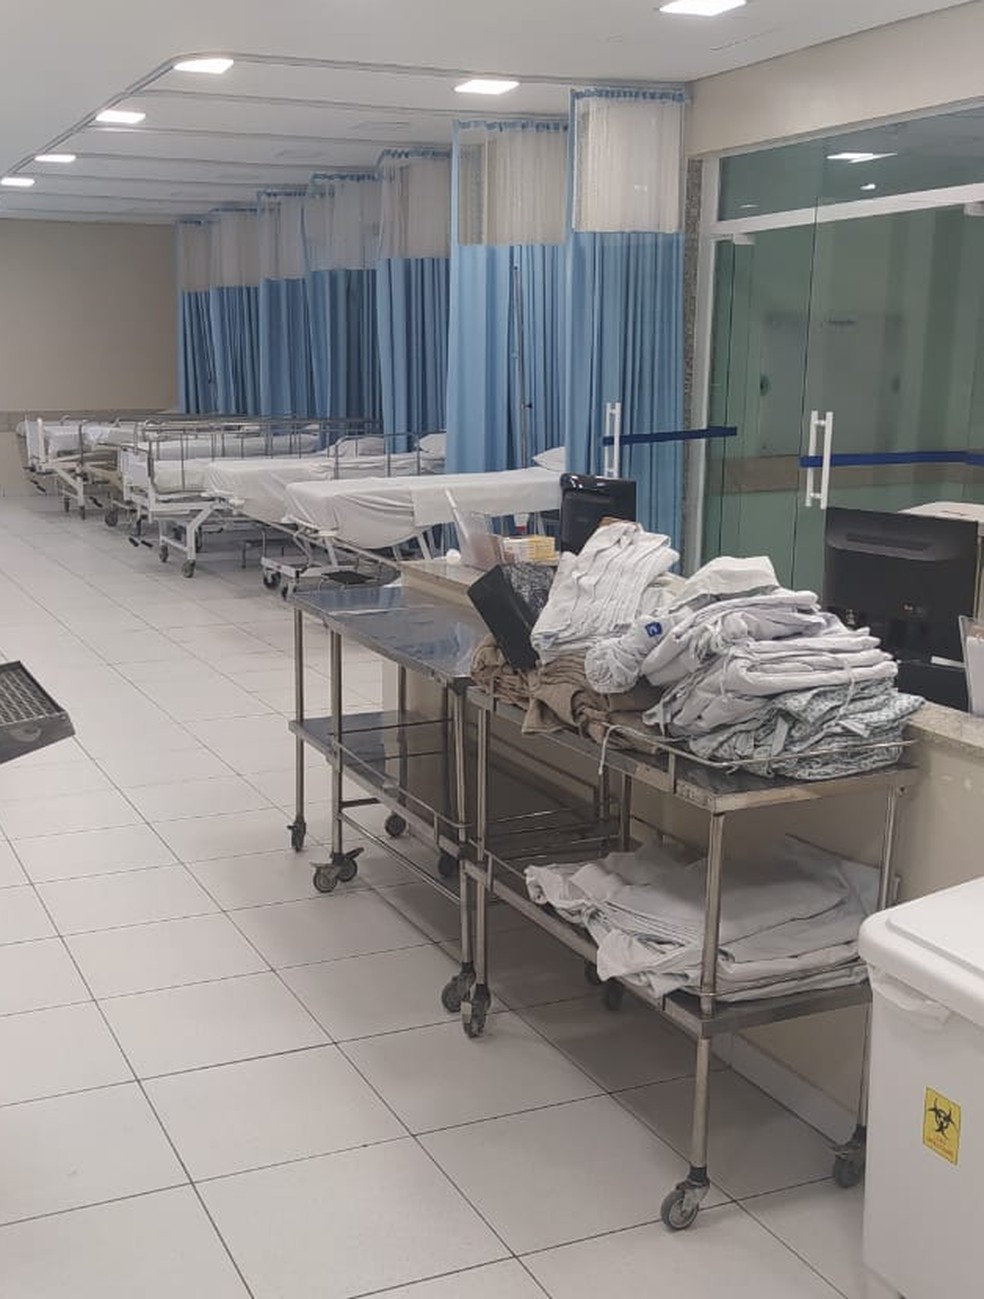 Hospital Evangélico de Londrina reabre pronto-socorro após higienização, Norte e Noroeste